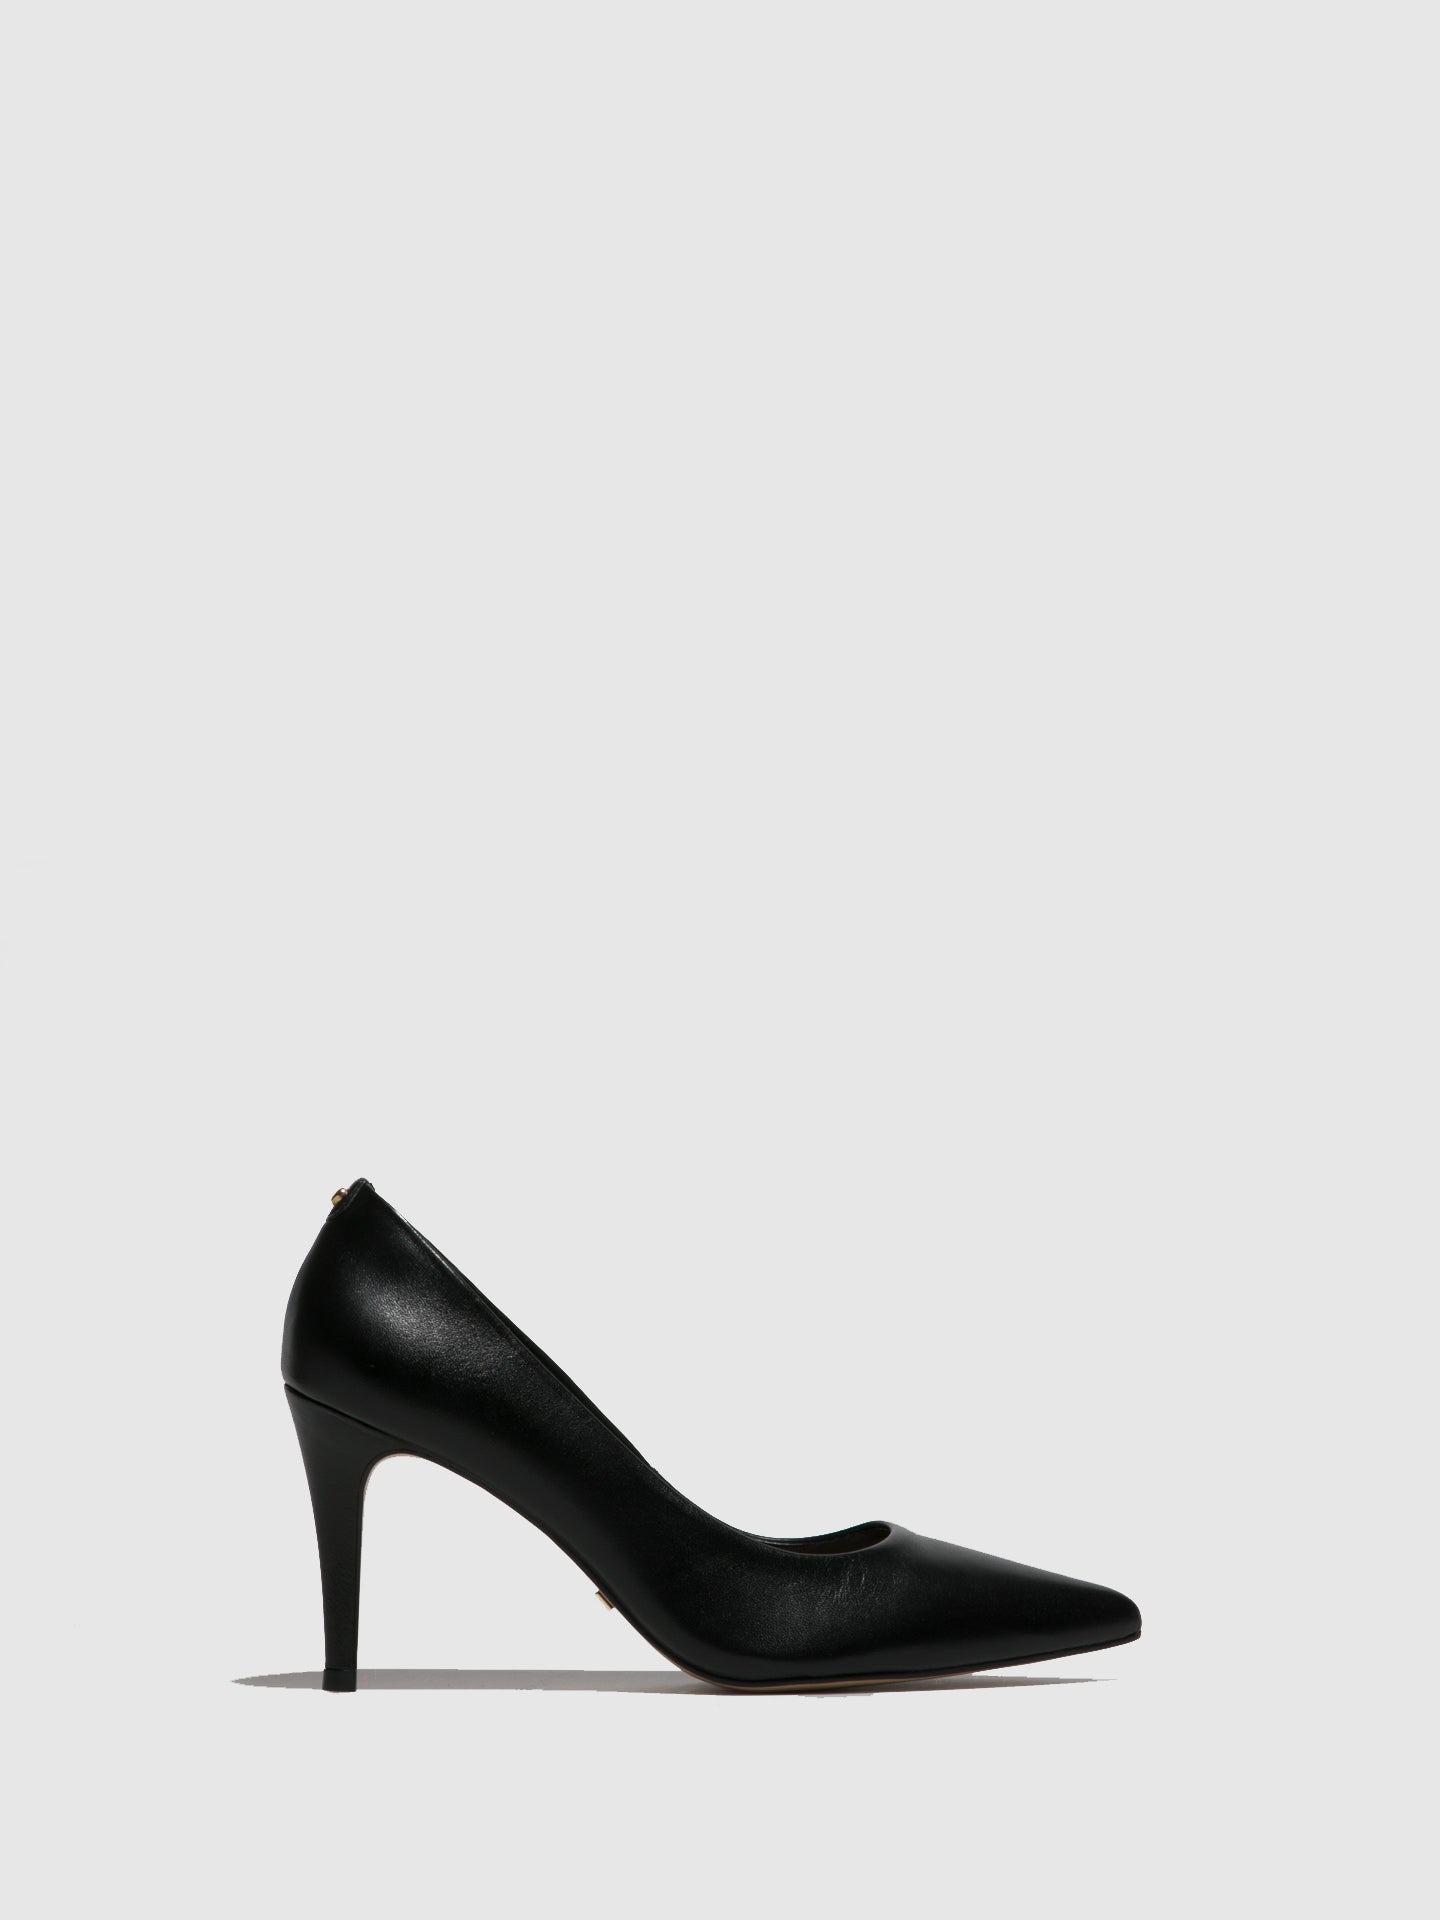 Parodi Stiletto Black Leather Stiletto Shoes